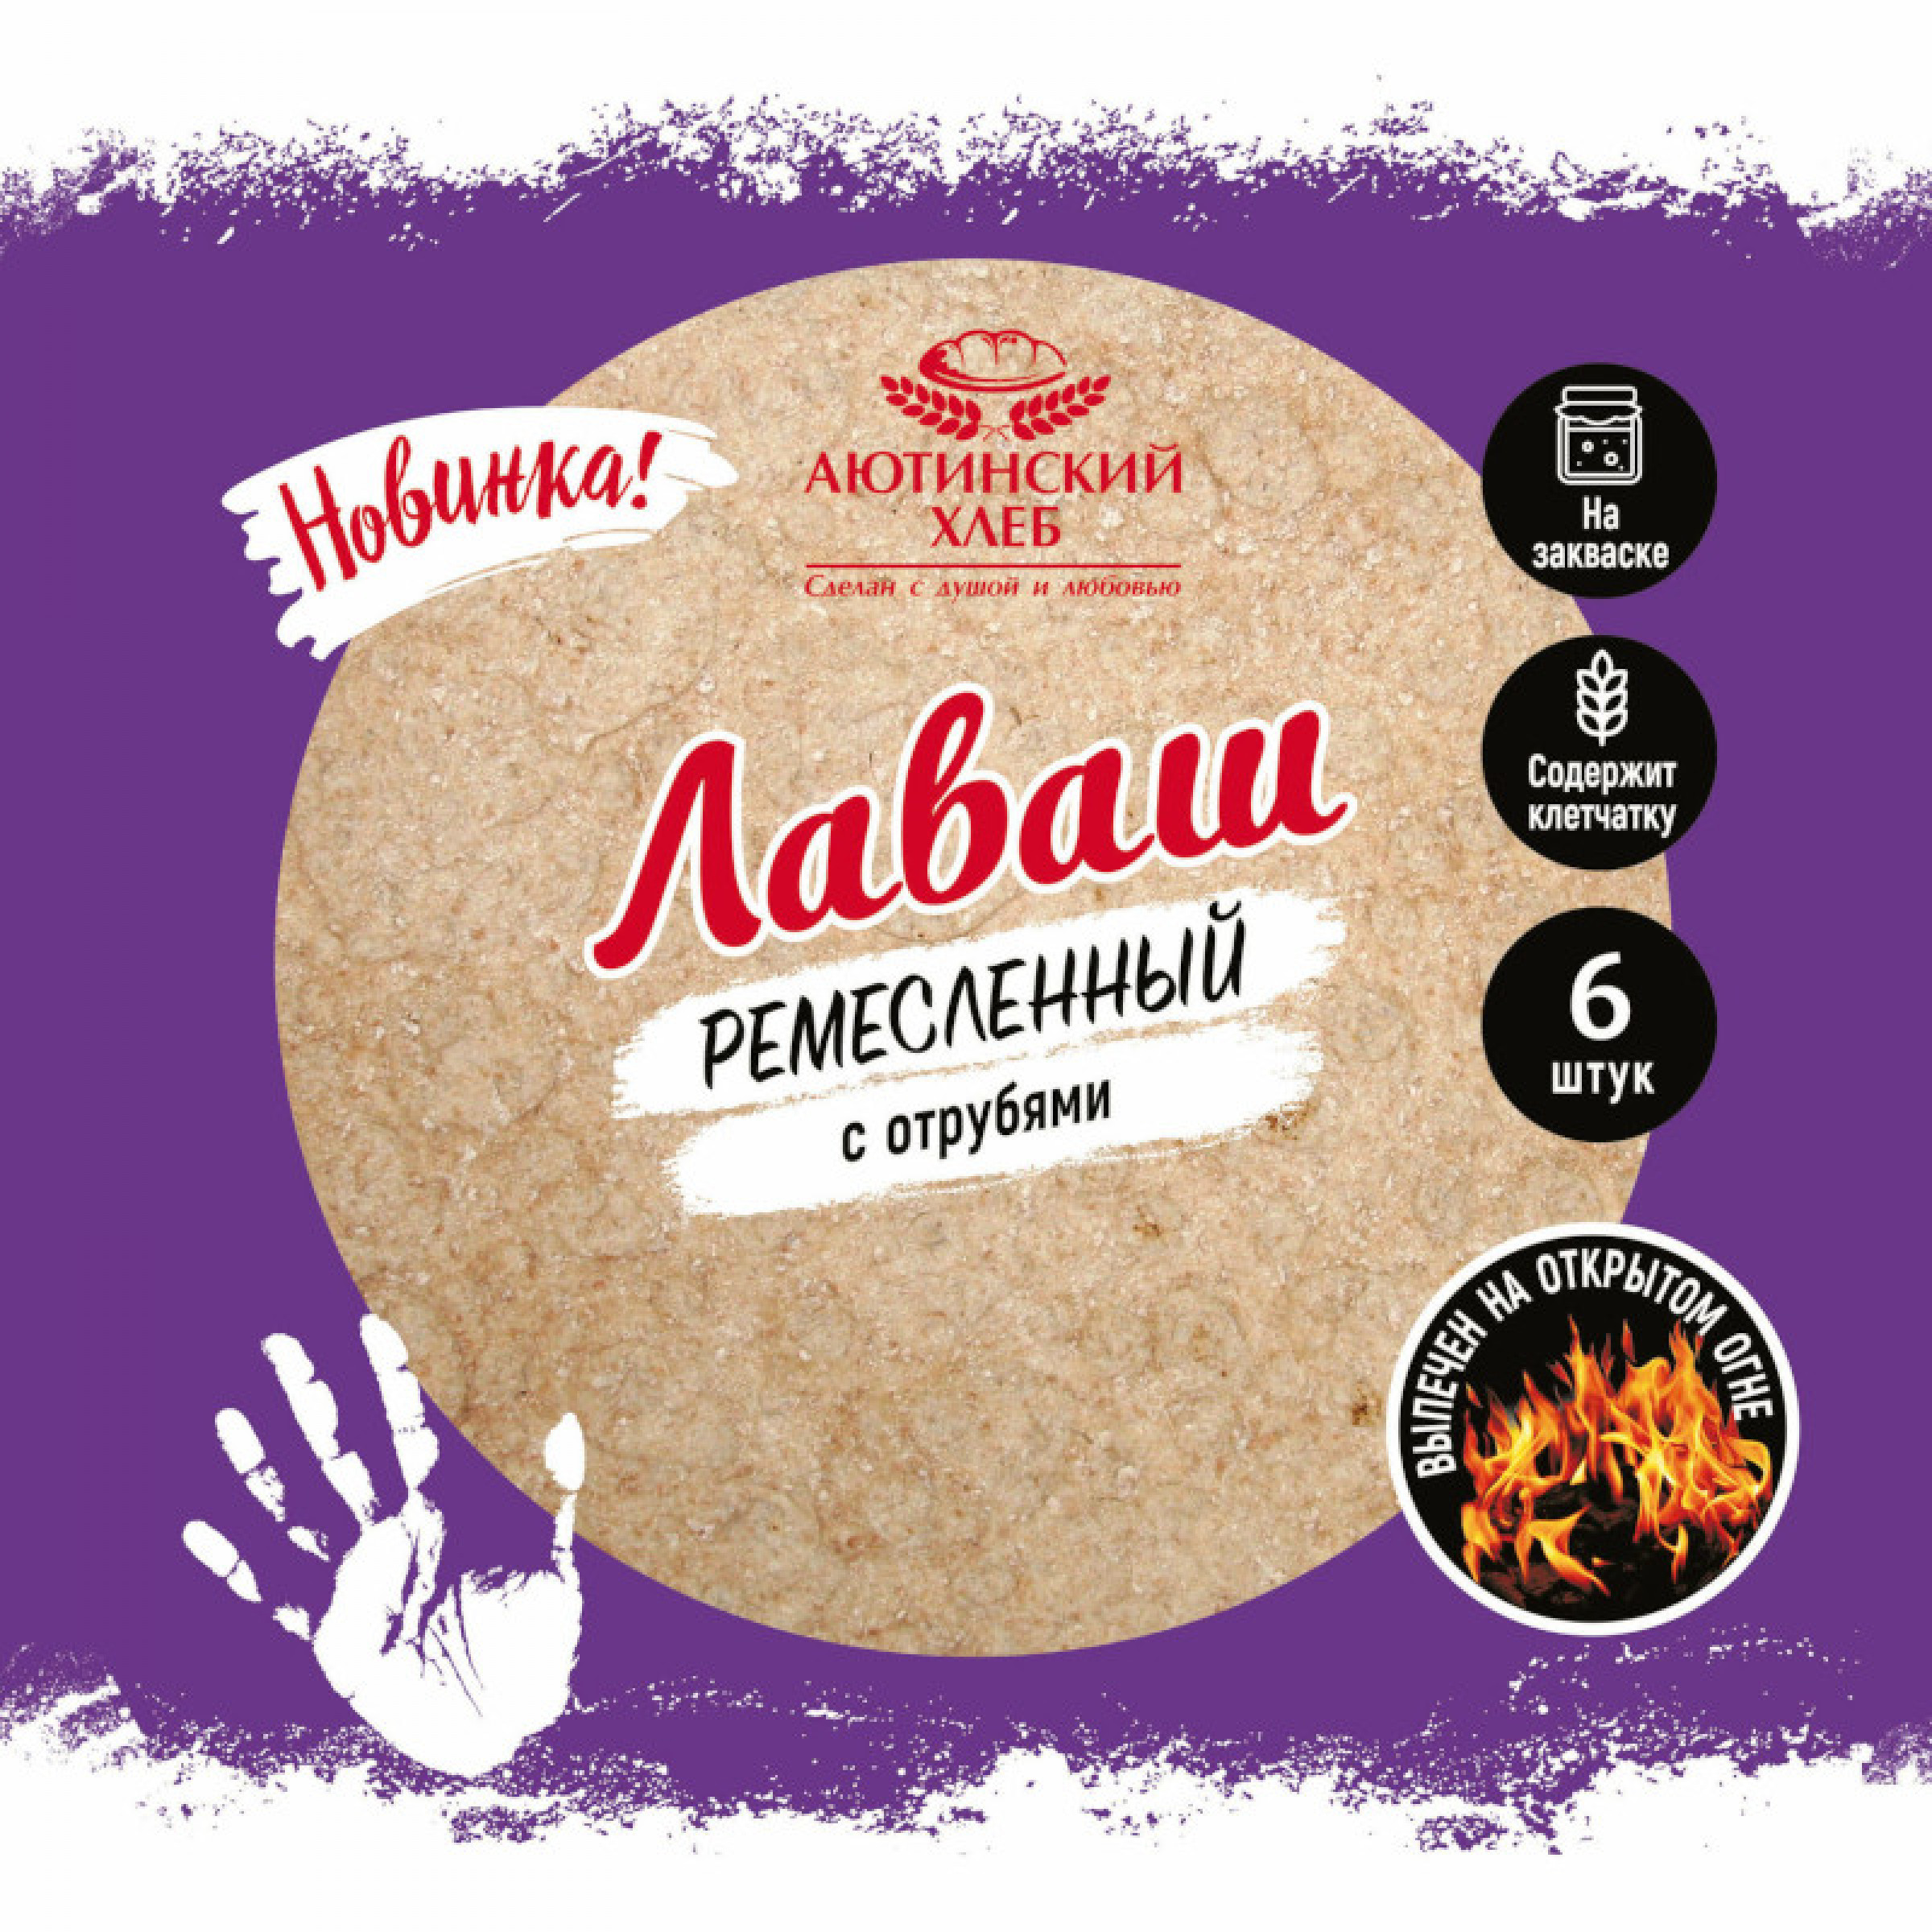 Лаваш Аютинский хлеб Ремесленный с отрубями, 240 г